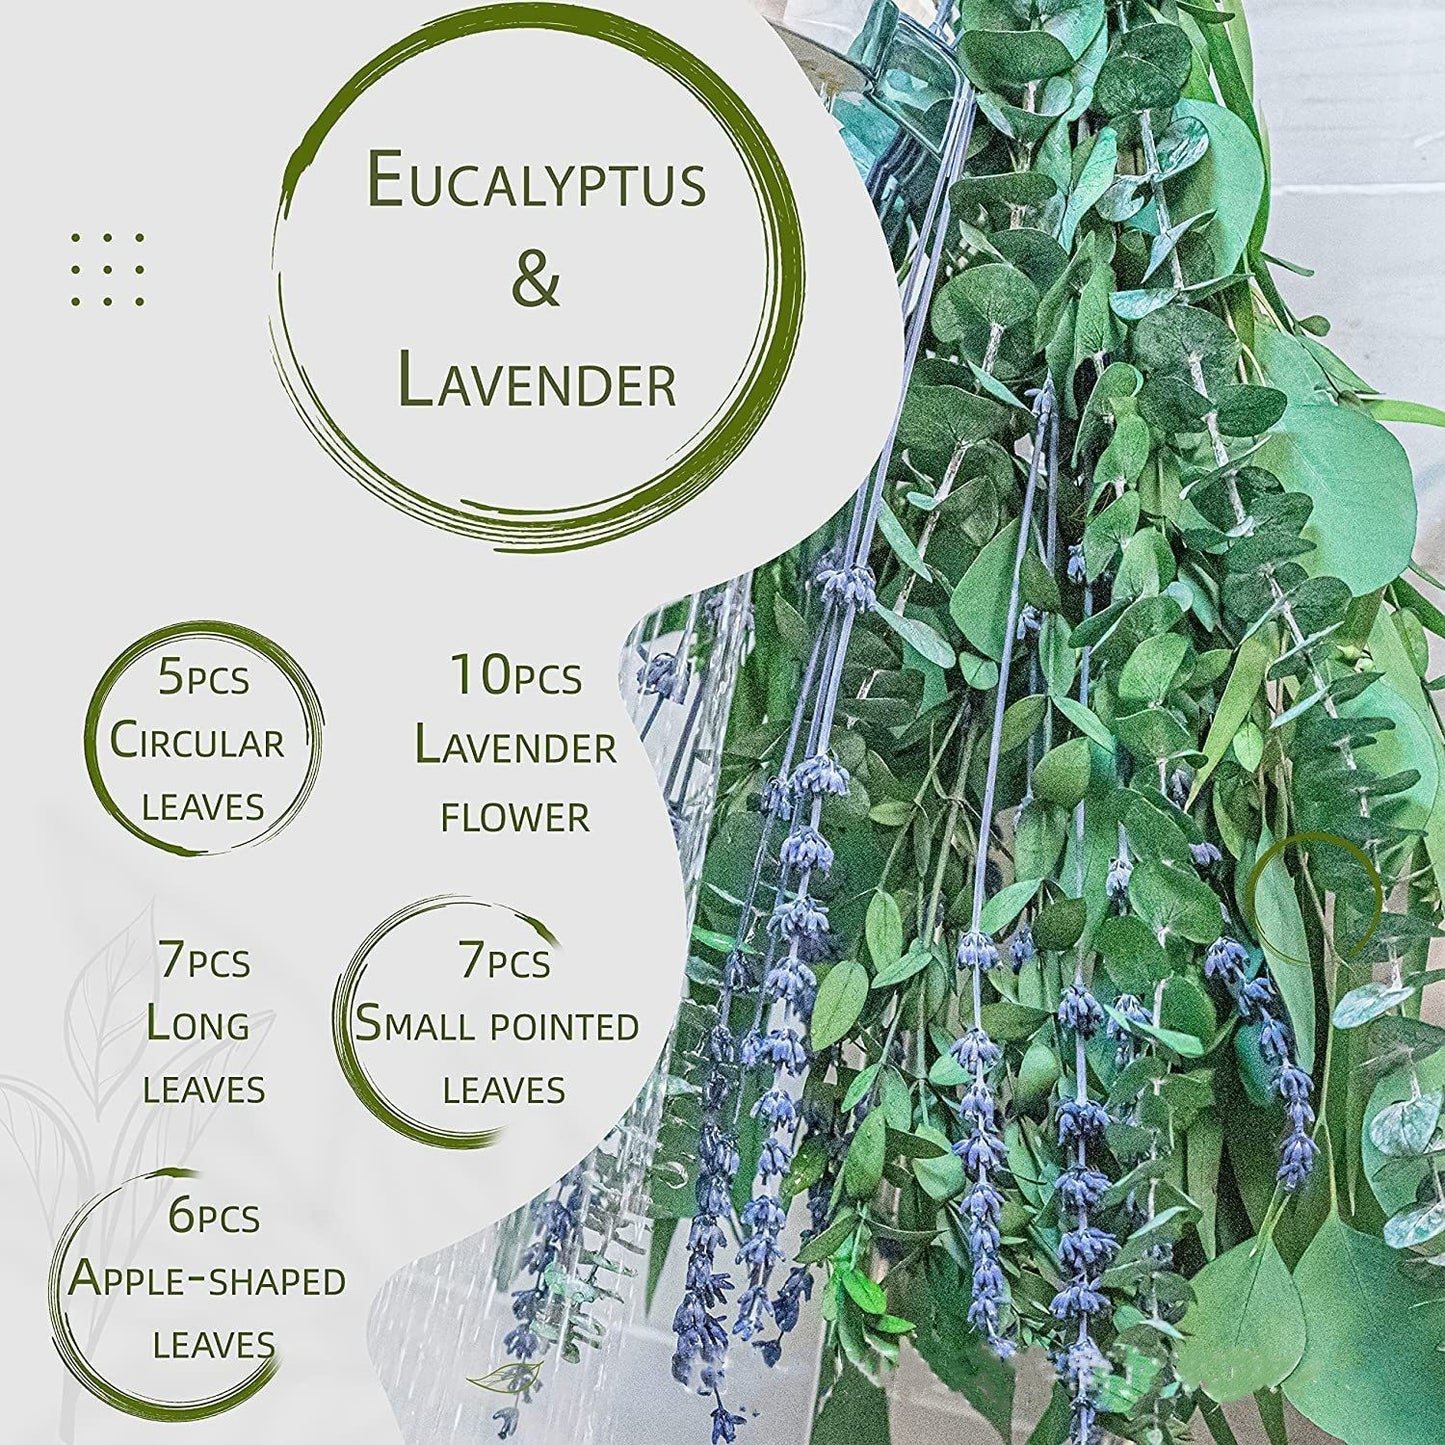 Shower Eucalyptus Lavender Mixed Bundle Set